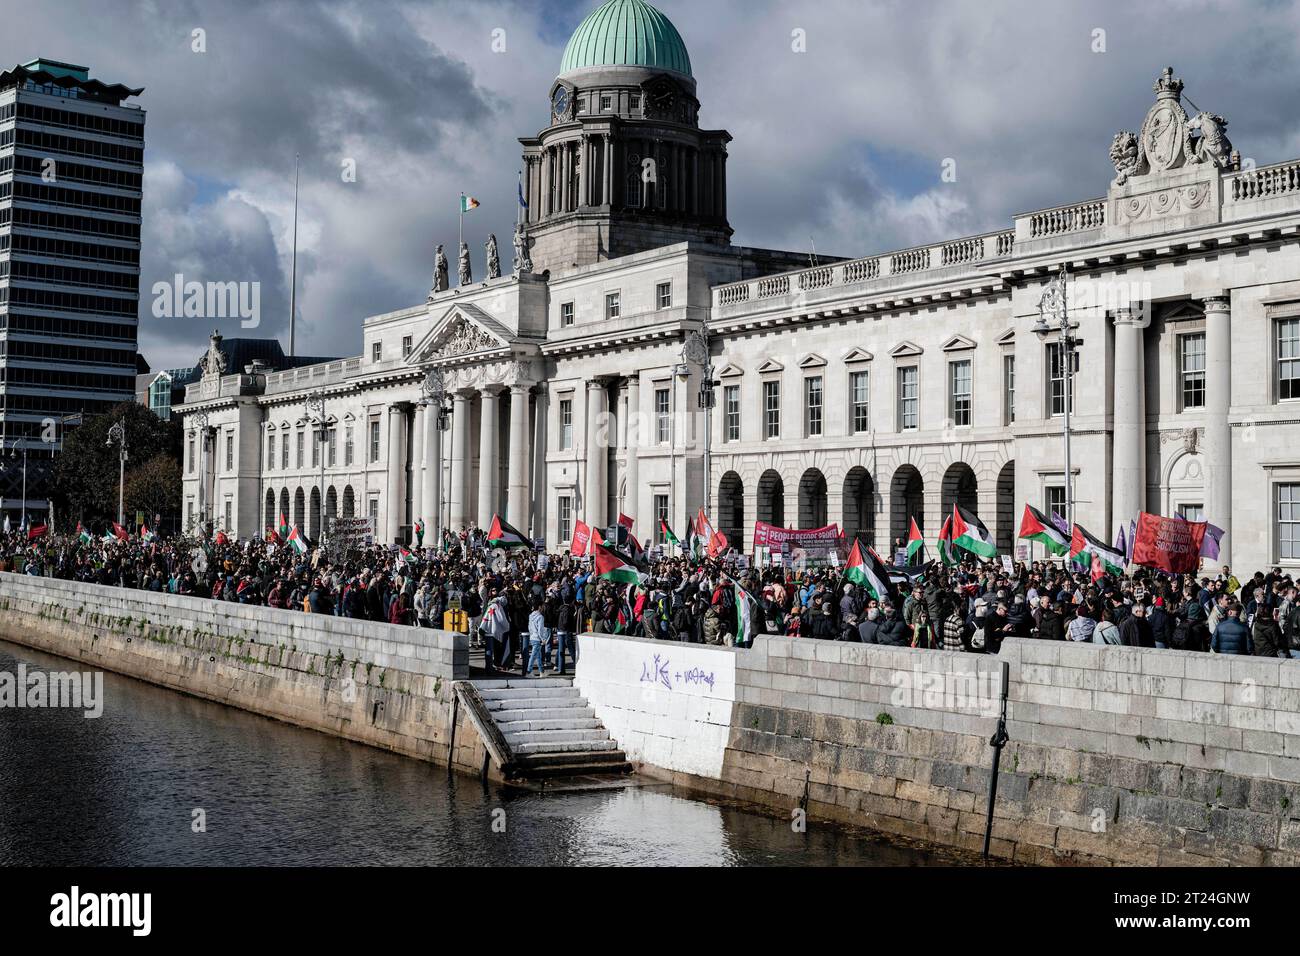 Dublin, Irland. Oktober 2023. Eine große Anzahl von Demonstranten mit Spruchbändern, Fahnen und Plakaten marschieren während der Demonstration durch Dublin in Richtung der israelischen Botschaft. Am Samstag, dem 14. Oktober, fand in Dublin ein dritter Tag der Proteste statt, der Solidarität mit dem palästinensischen Volk diente. Tausende von Menschen marschierten von der O'Connell Street durch die Stadt zur israelischen Botschaft, wo Sprecher der palästinensischen und syrischen Gemeinschaft über ihre Erfahrungen und aktuelle Nachrichten von Familienmitgliedern und Freunden in Gaza sowie von Mitgliedern der I.P.S.C. (Irland Palästina-Solidarität CA) berichteten Stockfoto